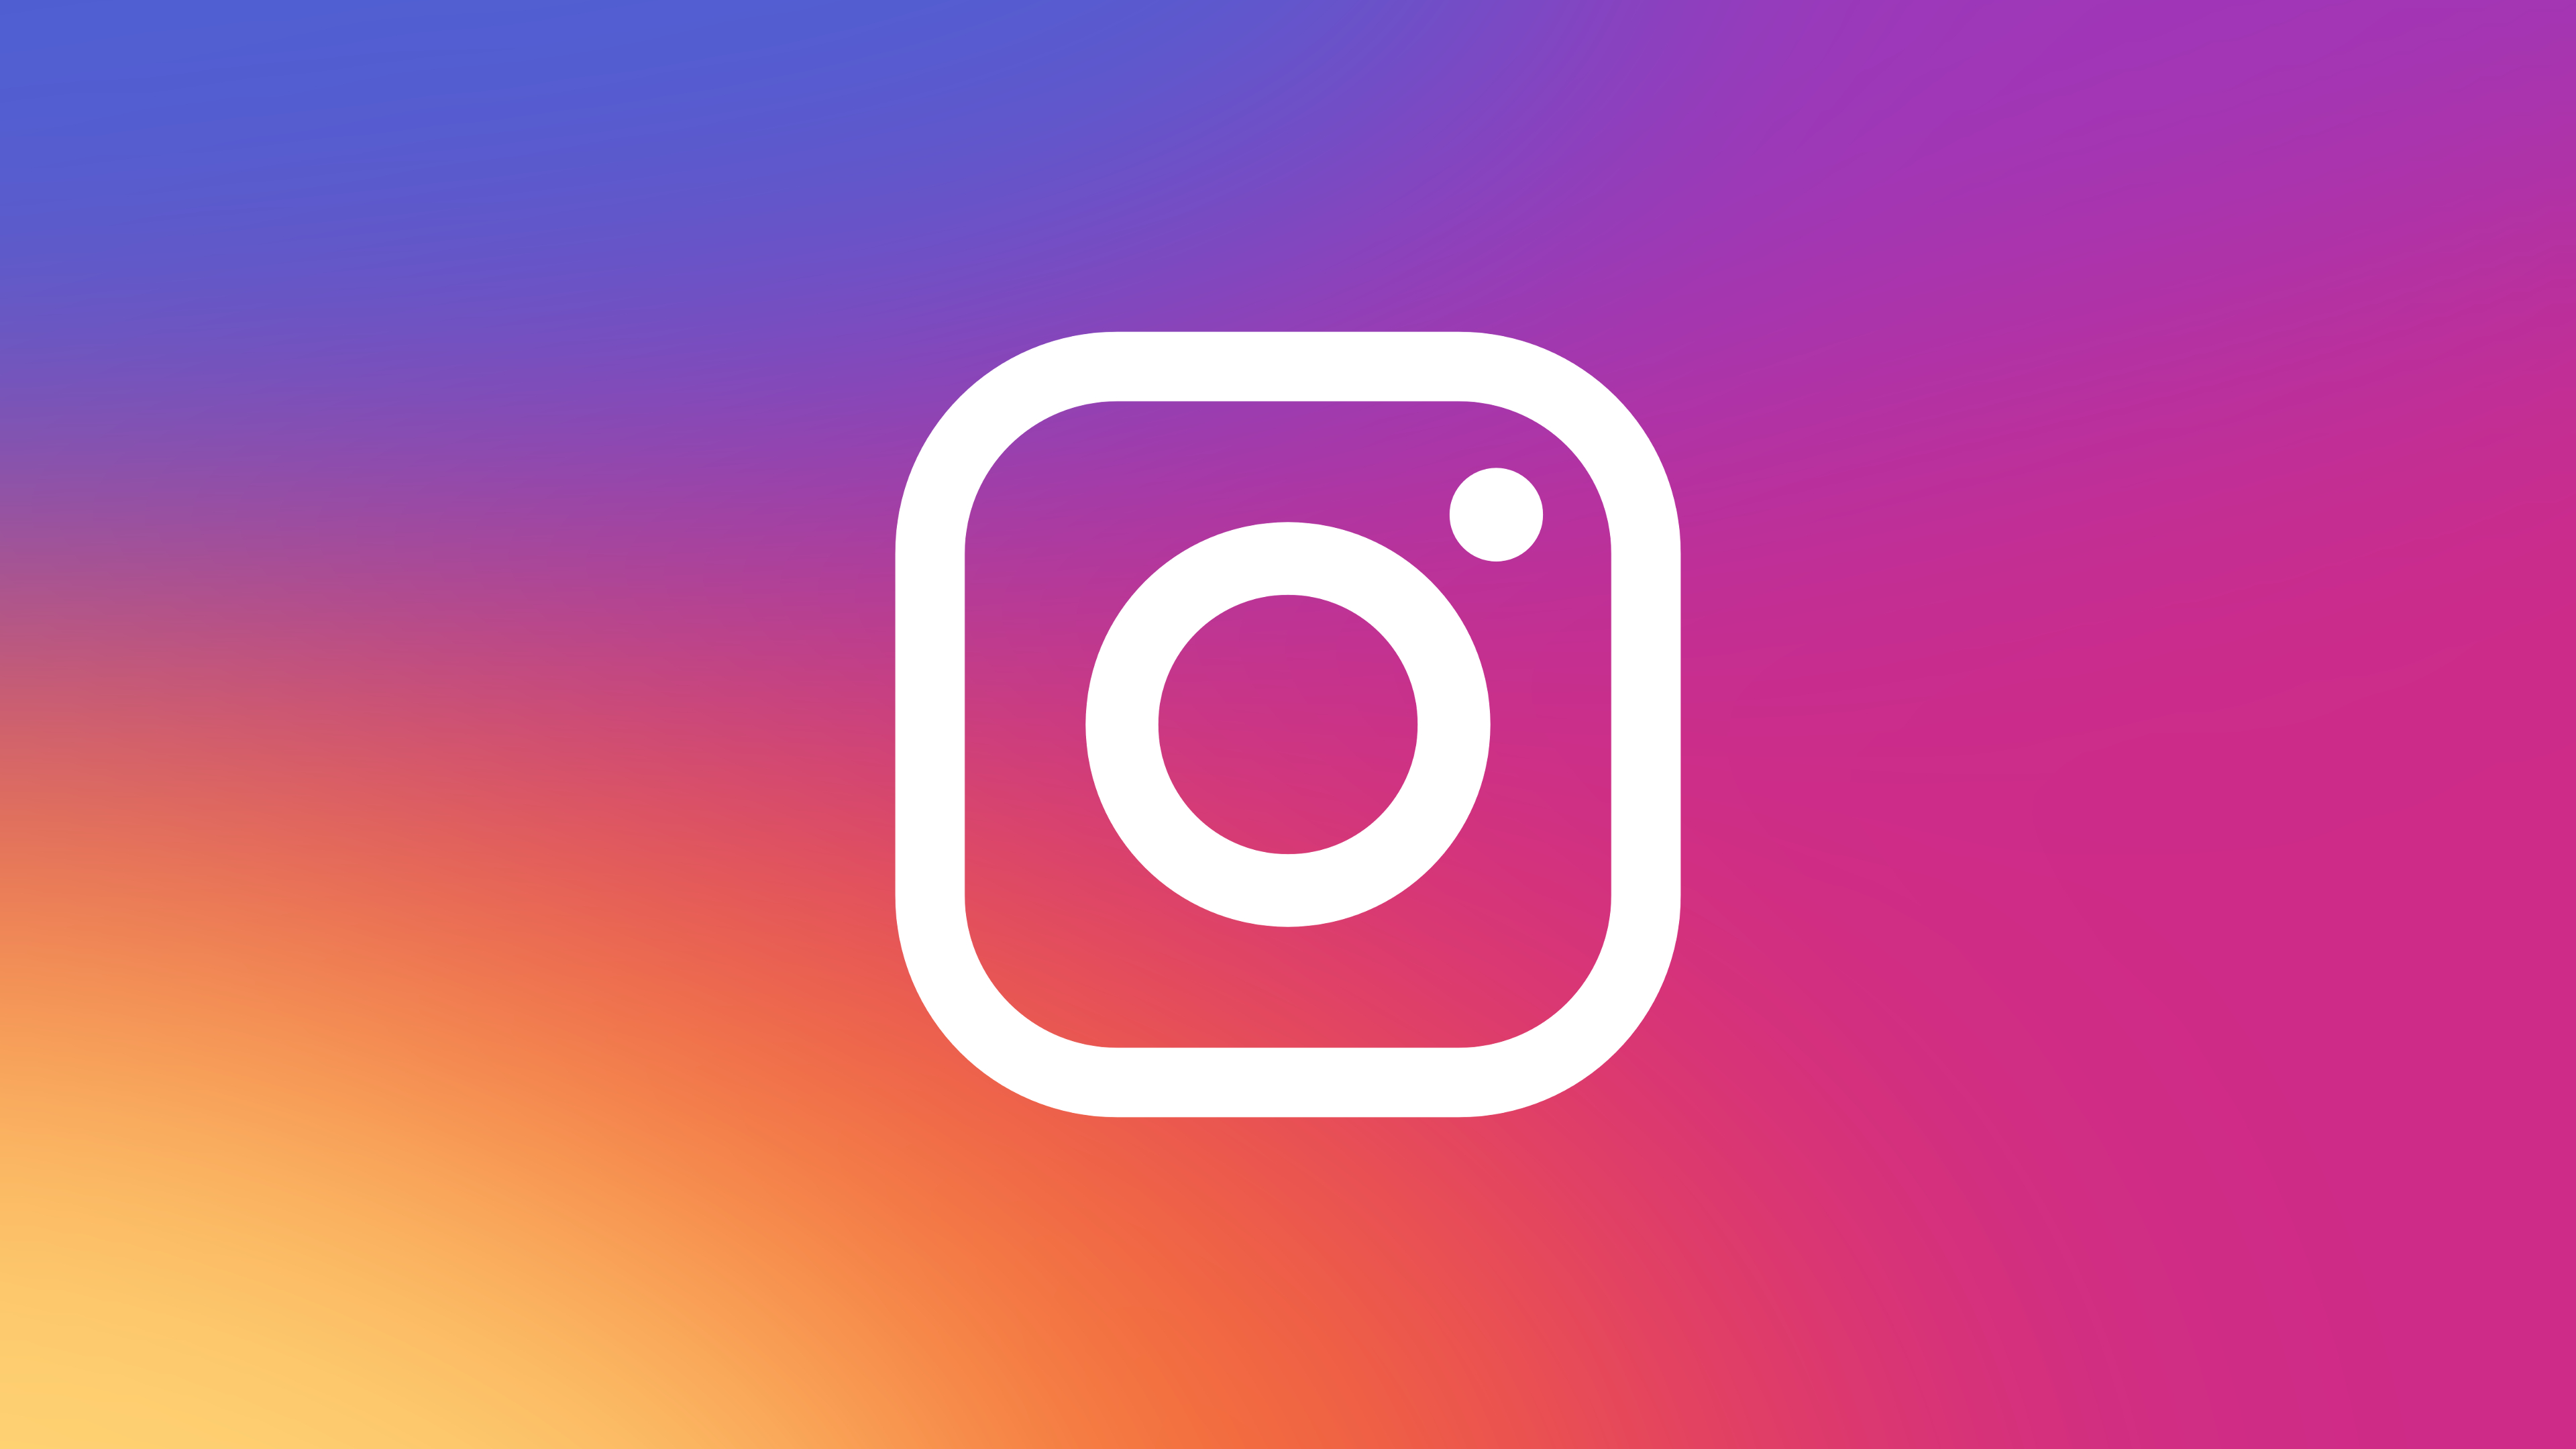 instagram download photos